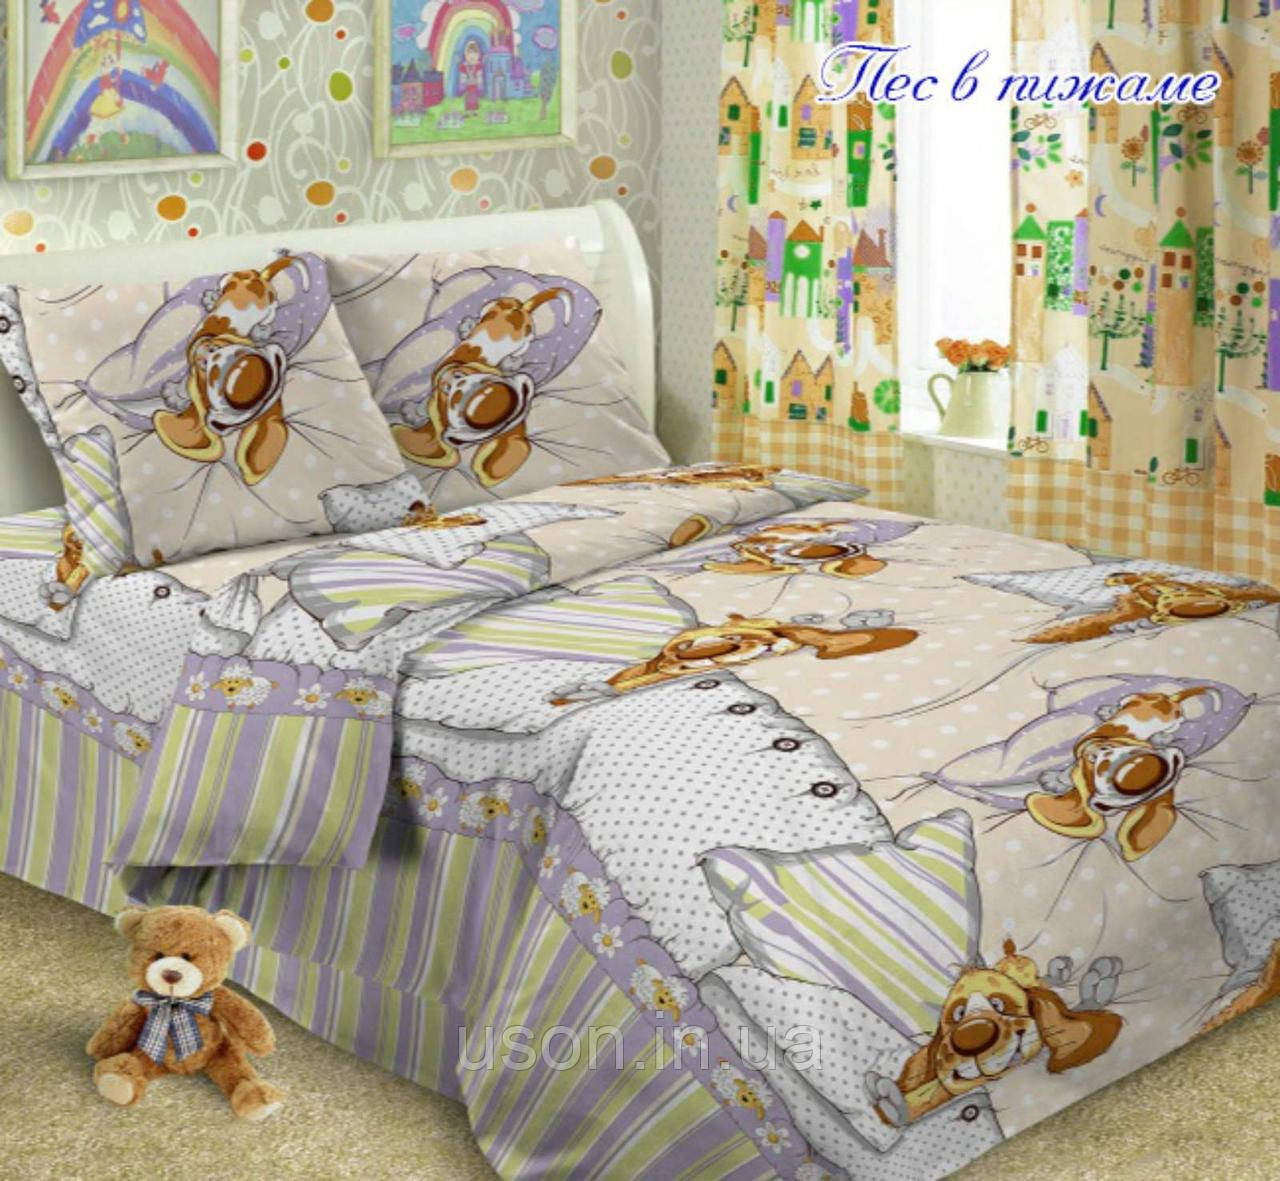 

Комплект постельного белья полуторный ТМ Таg ранфорс Пес в пижаме, Разные цвета